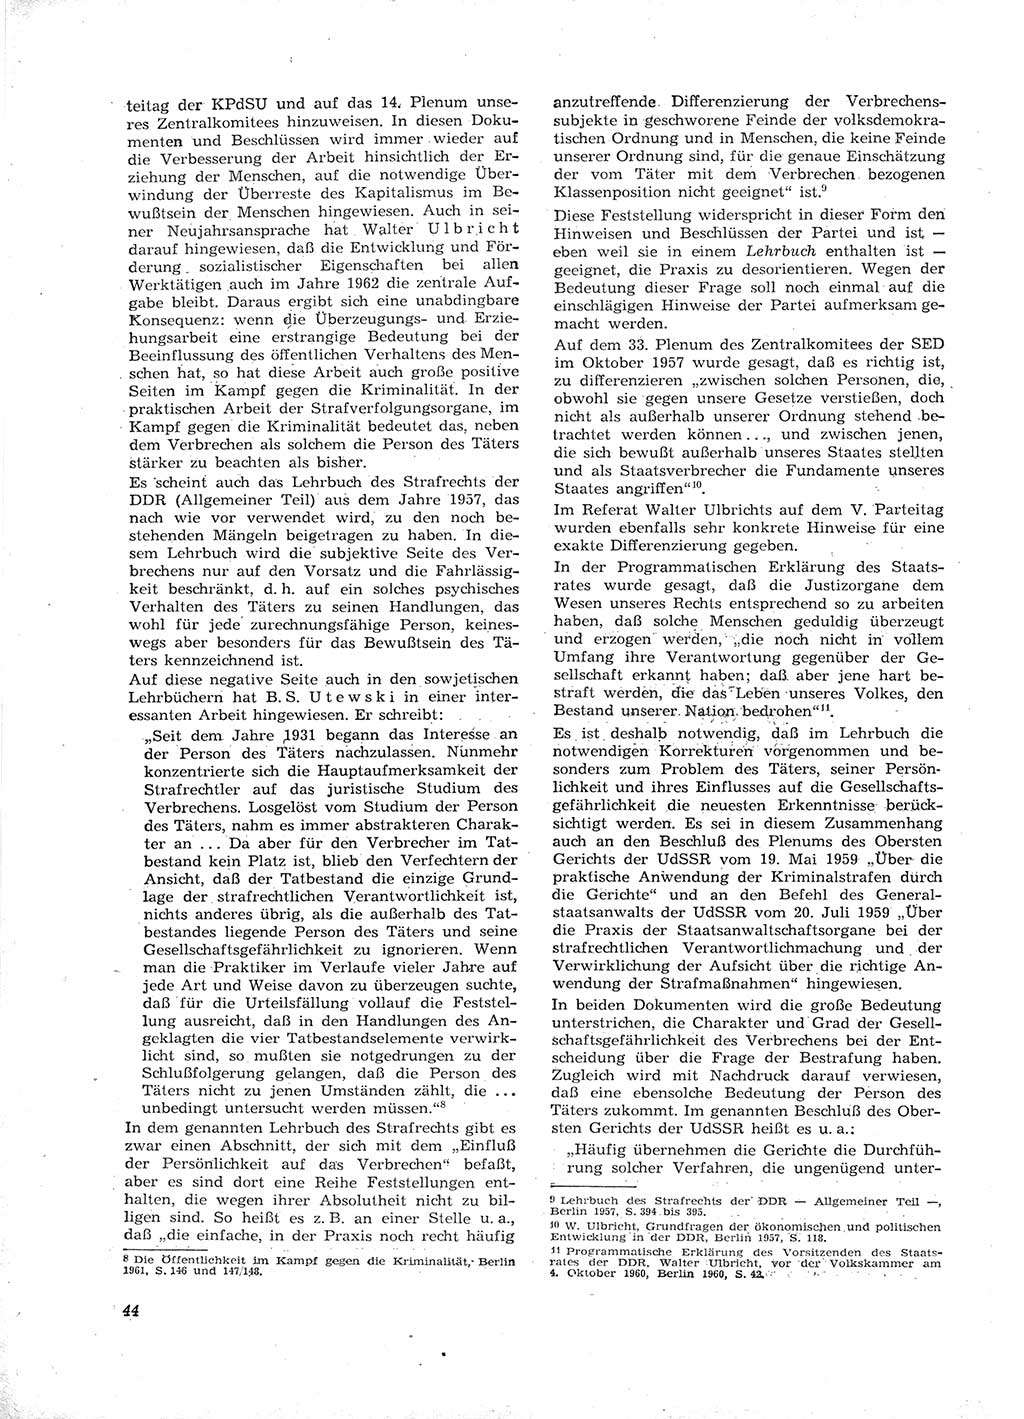 Neue Justiz (NJ), Zeitschrift für Recht und Rechtswissenschaft [Deutsche Demokratische Republik (DDR)], 16. Jahrgang 1962, Seite 44 (NJ DDR 1962, S. 44)